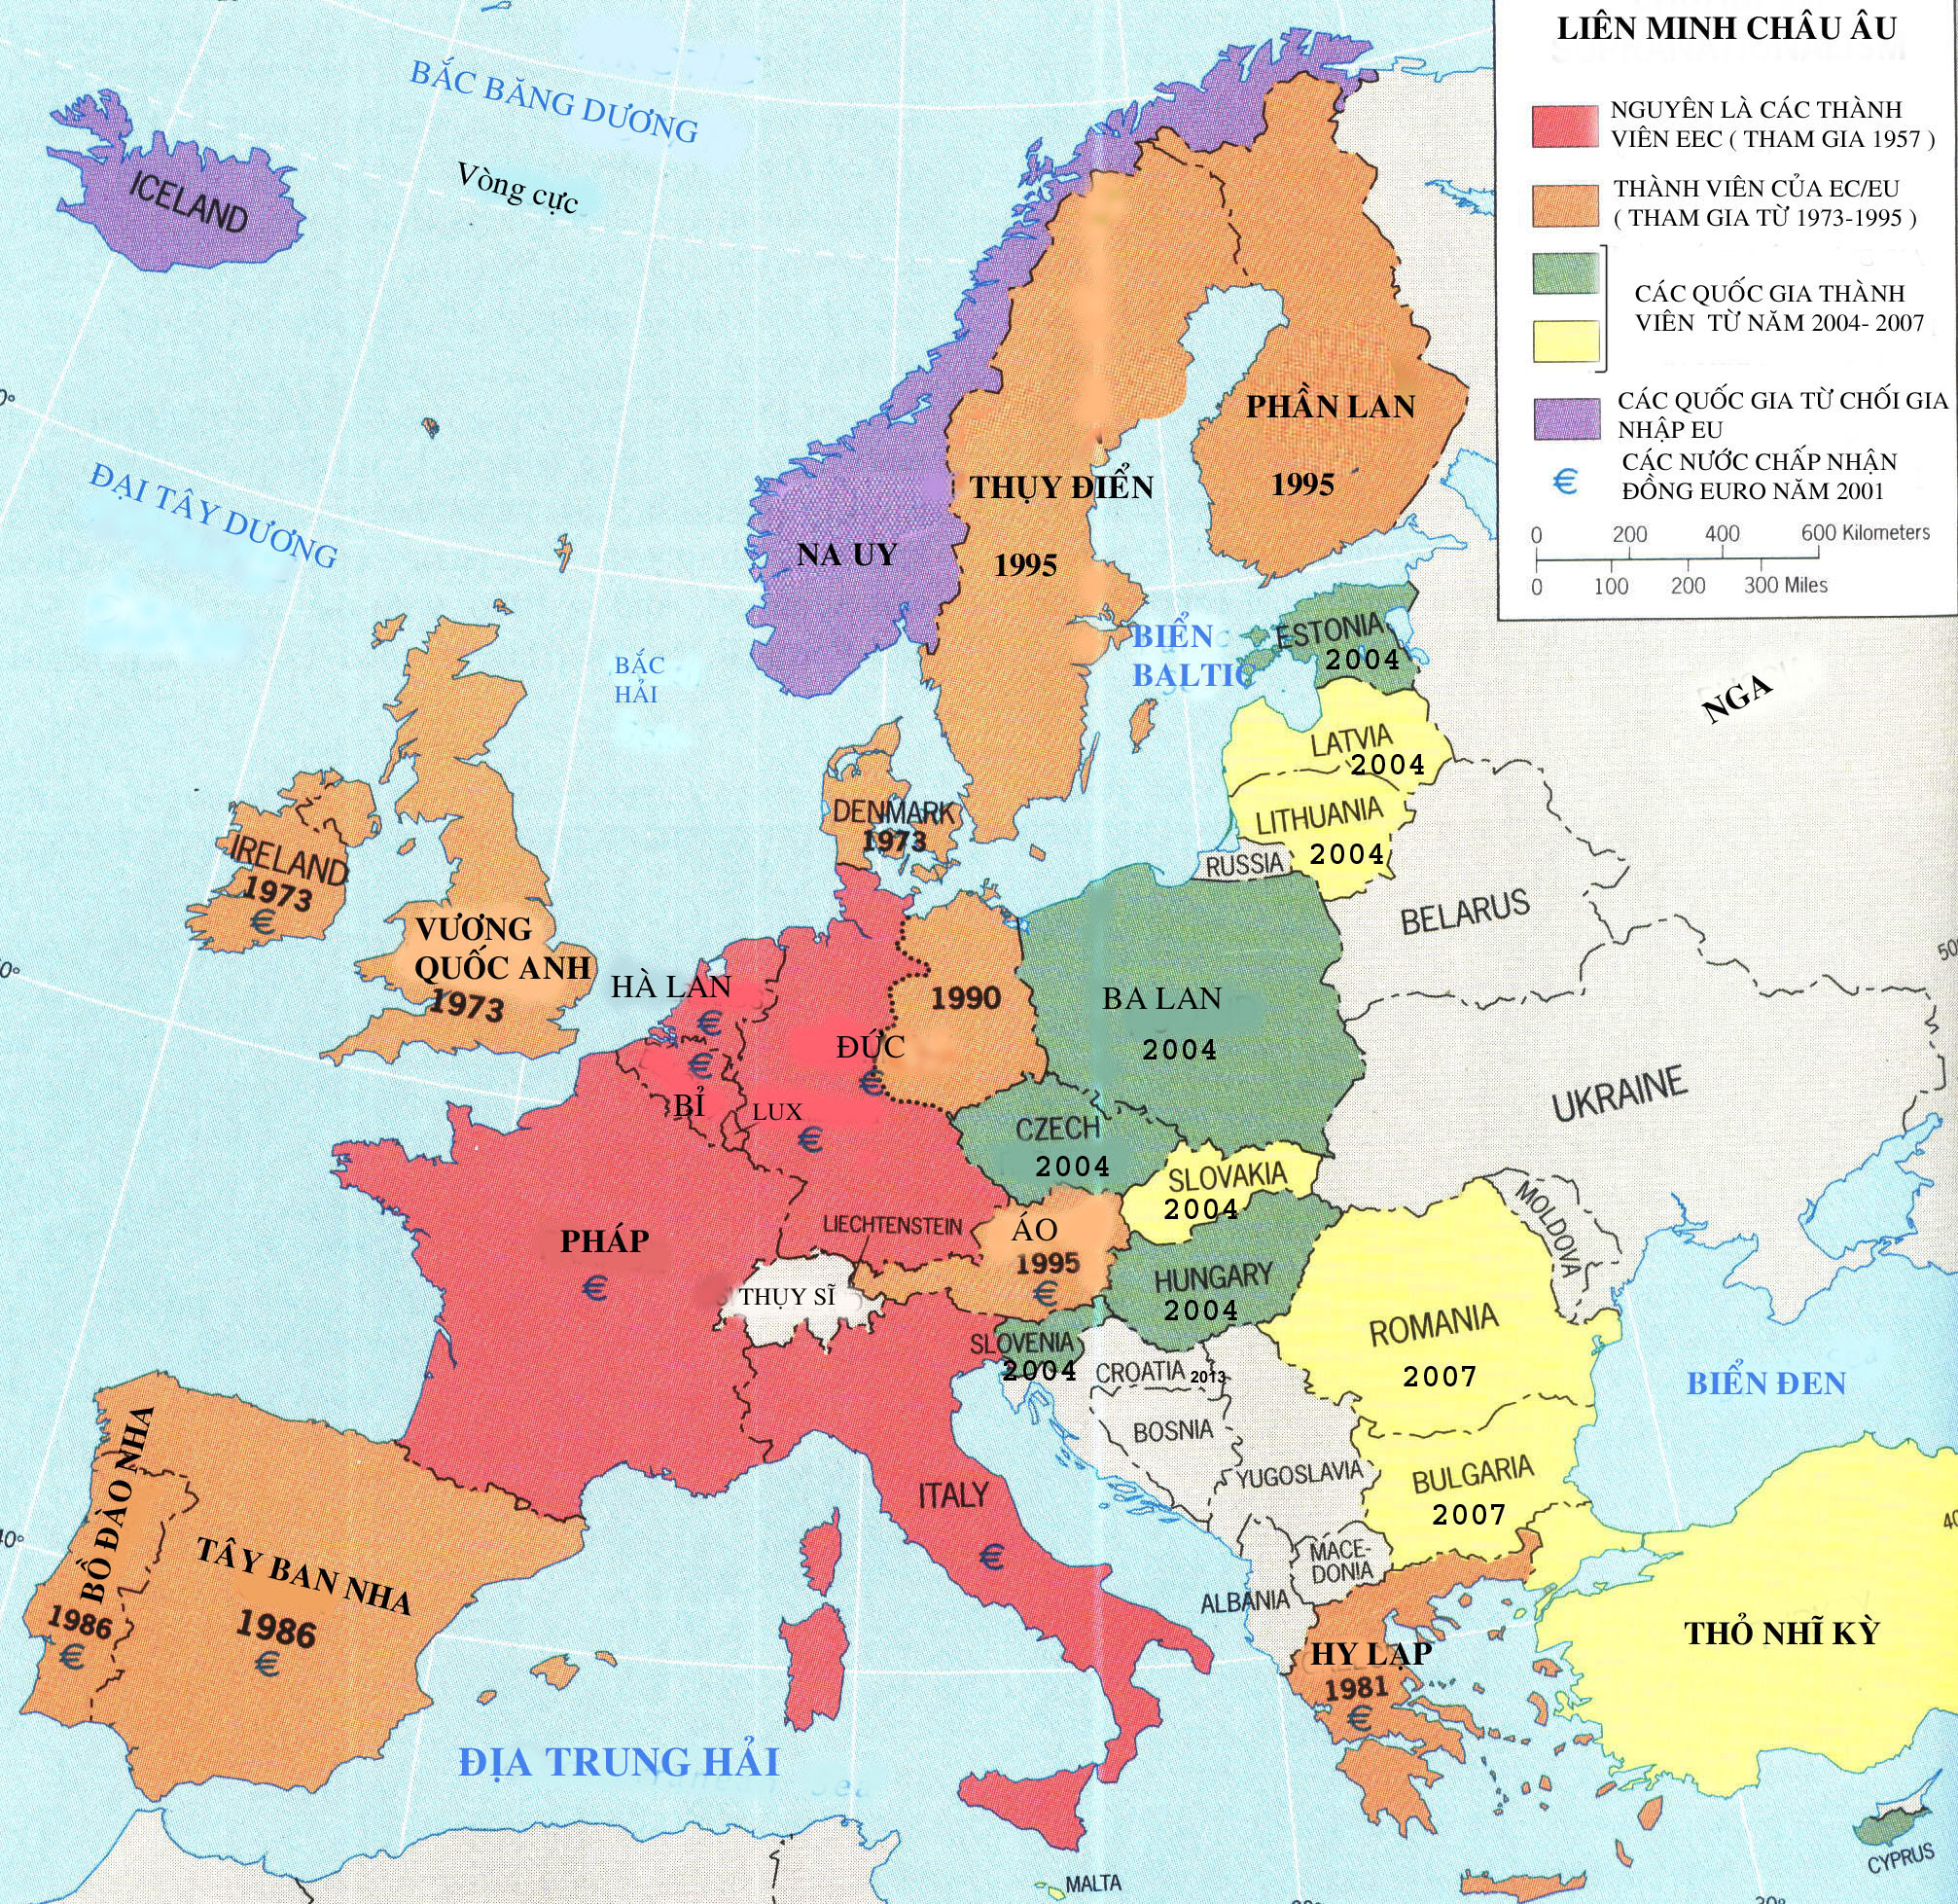 Bản Đồ Châu Âu và Những Điểm Cần Lưu Ý